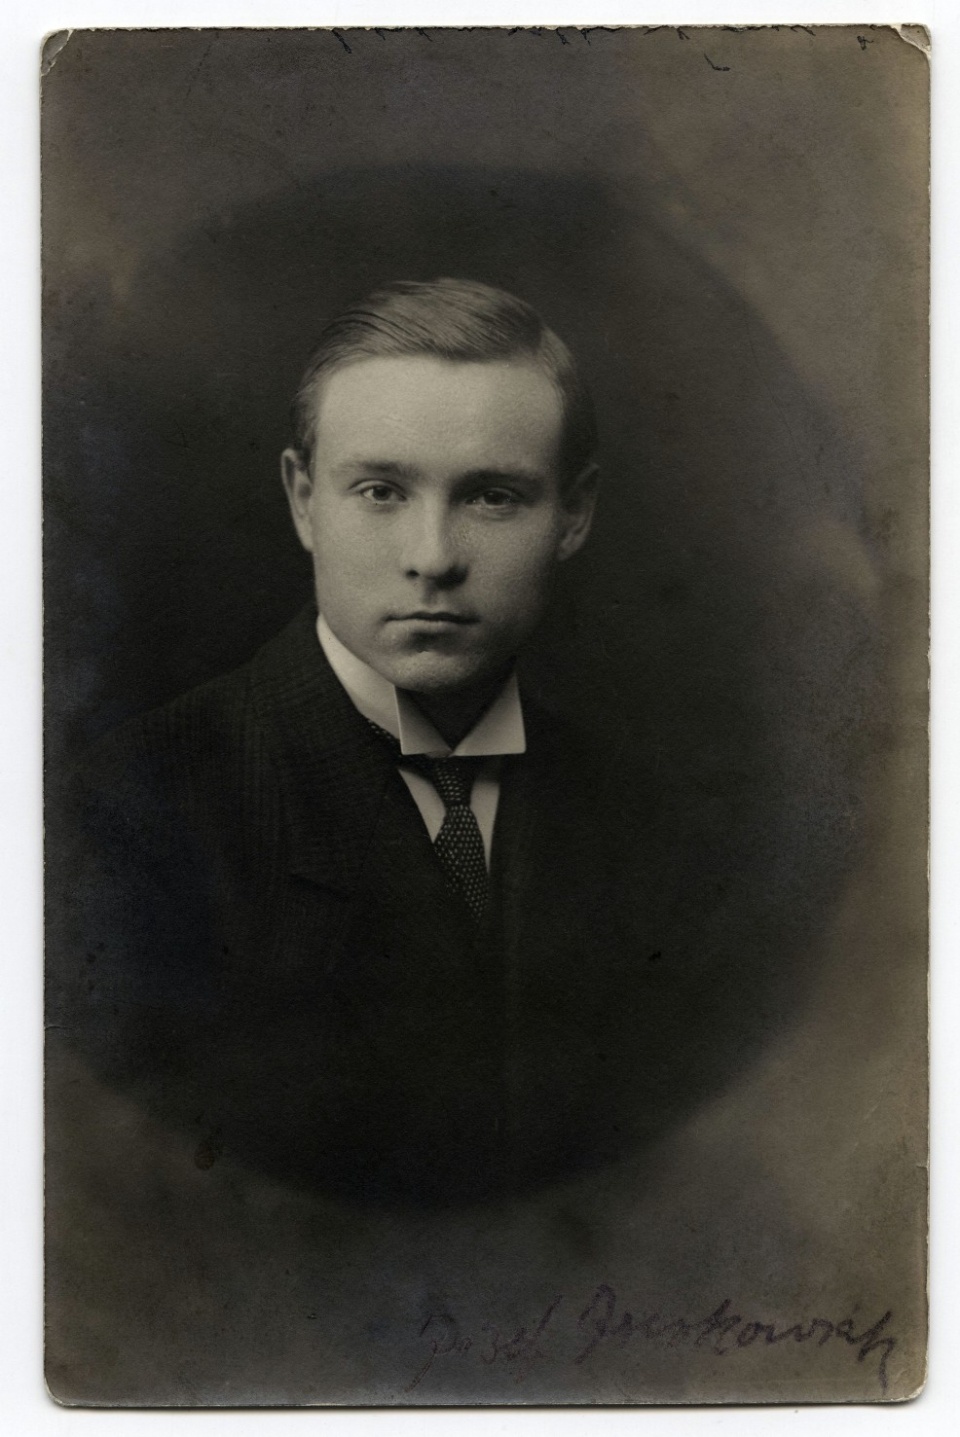 Zdjęcia ze zbiorów wnuka bohatera książki - Ludomira Niemca.